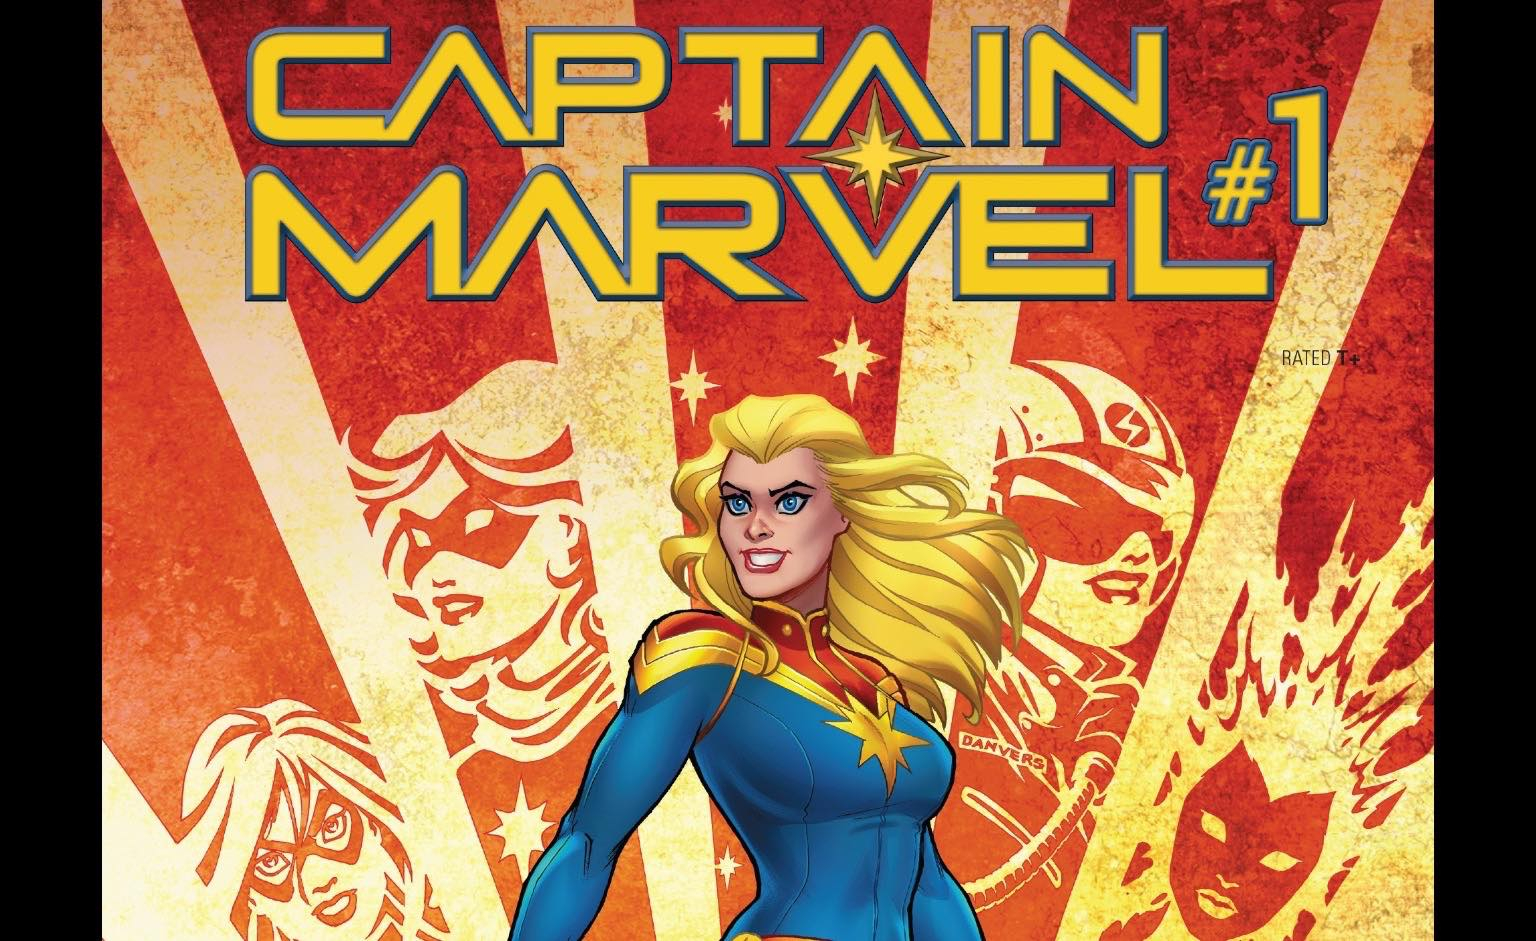 Марвел 1.16 5. Капитан Марвел первый комикс. Келли Марвел. Comic book Day Марвел. Марвел комикс Captain Marvel #49 обложка.